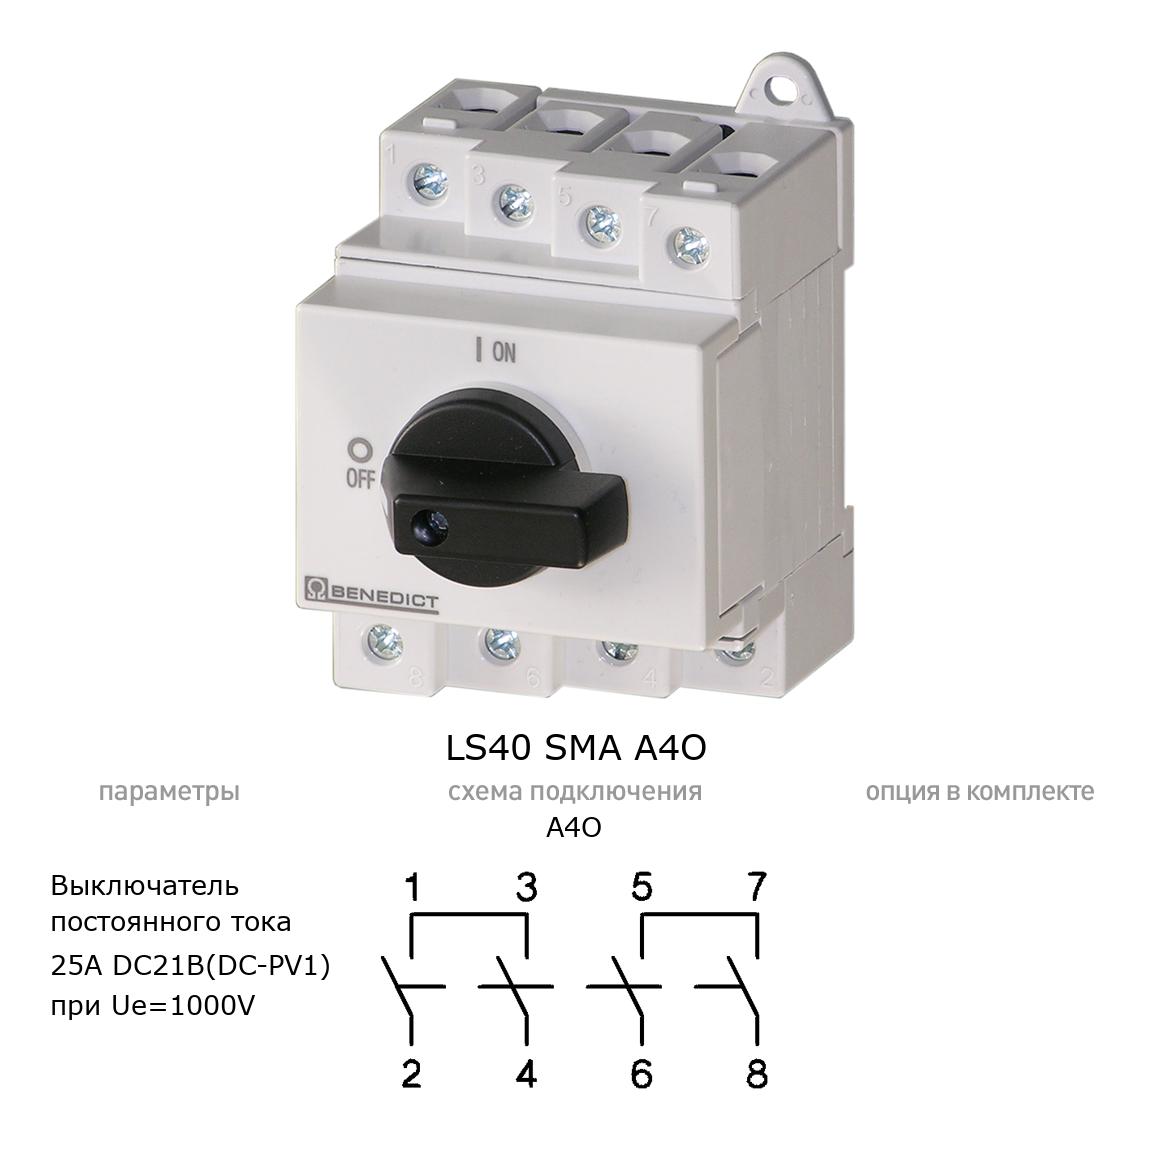 Кулачковый переключатель для постоянного тока (DC) LS40 SMA A4O BENEDICT